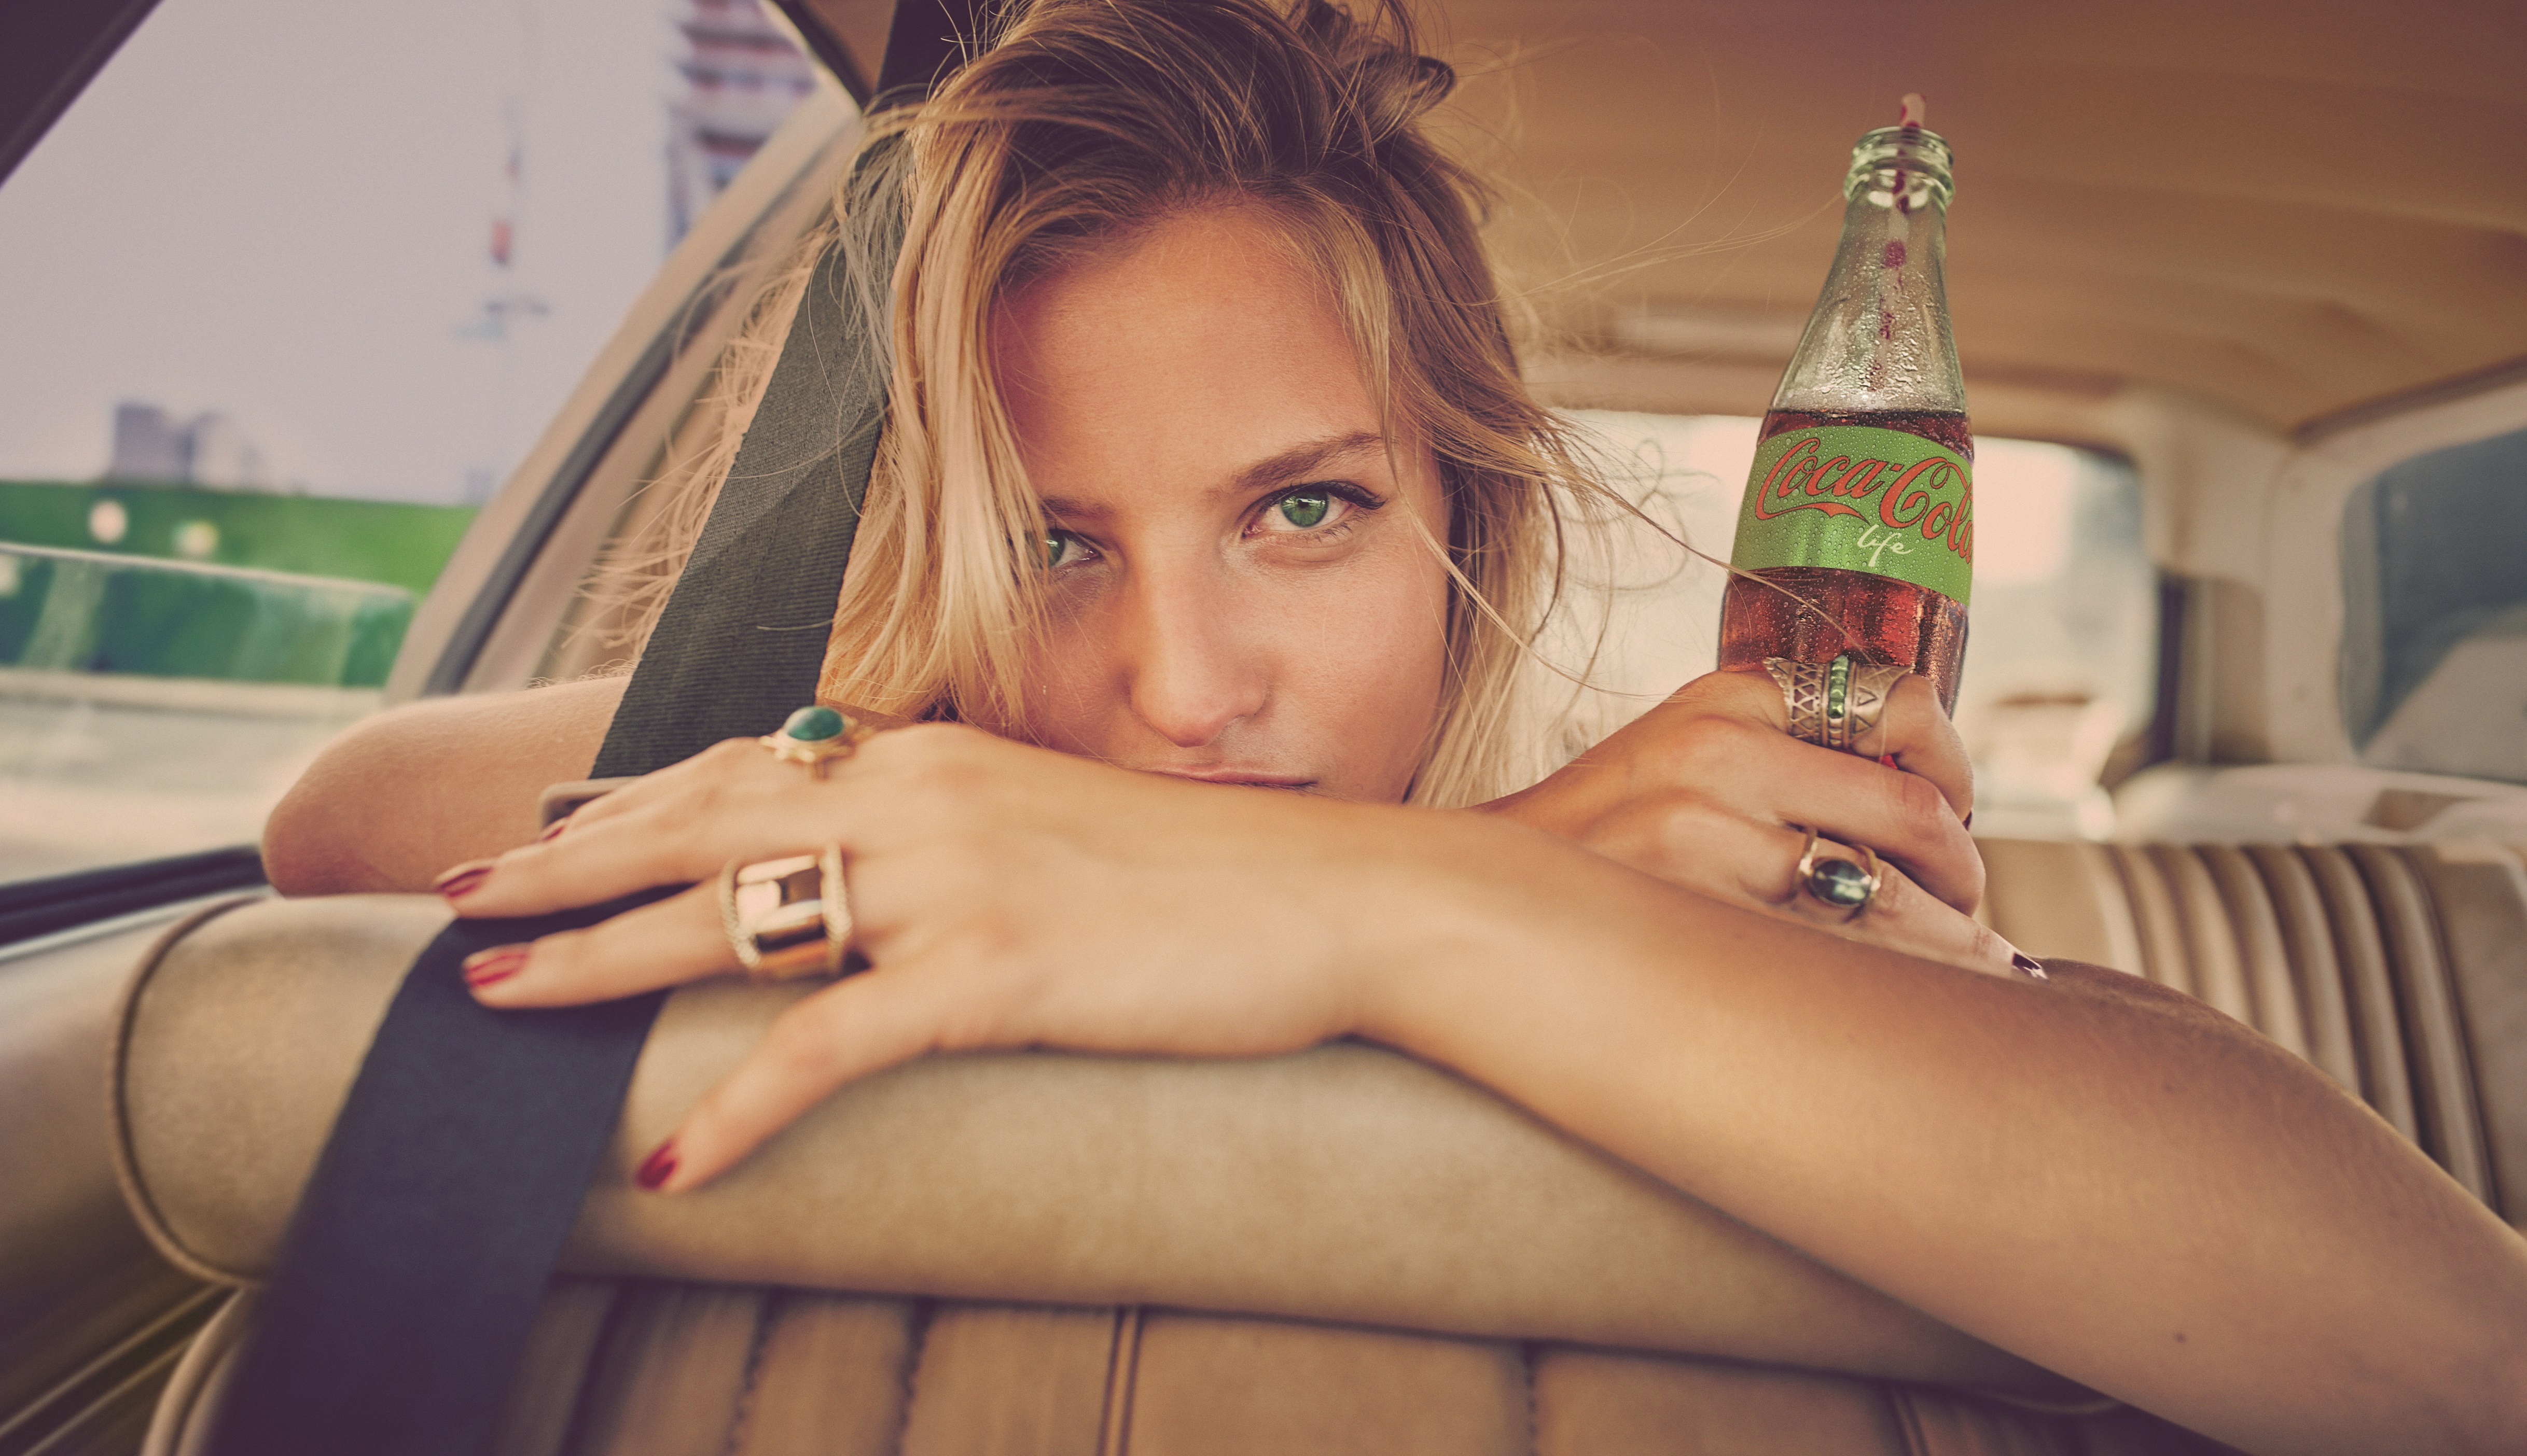 Известные рекламные ролики. Реклама напитков. Фотосессия Кока кола. Реклама напитков с девушками. Рекламная фотография.